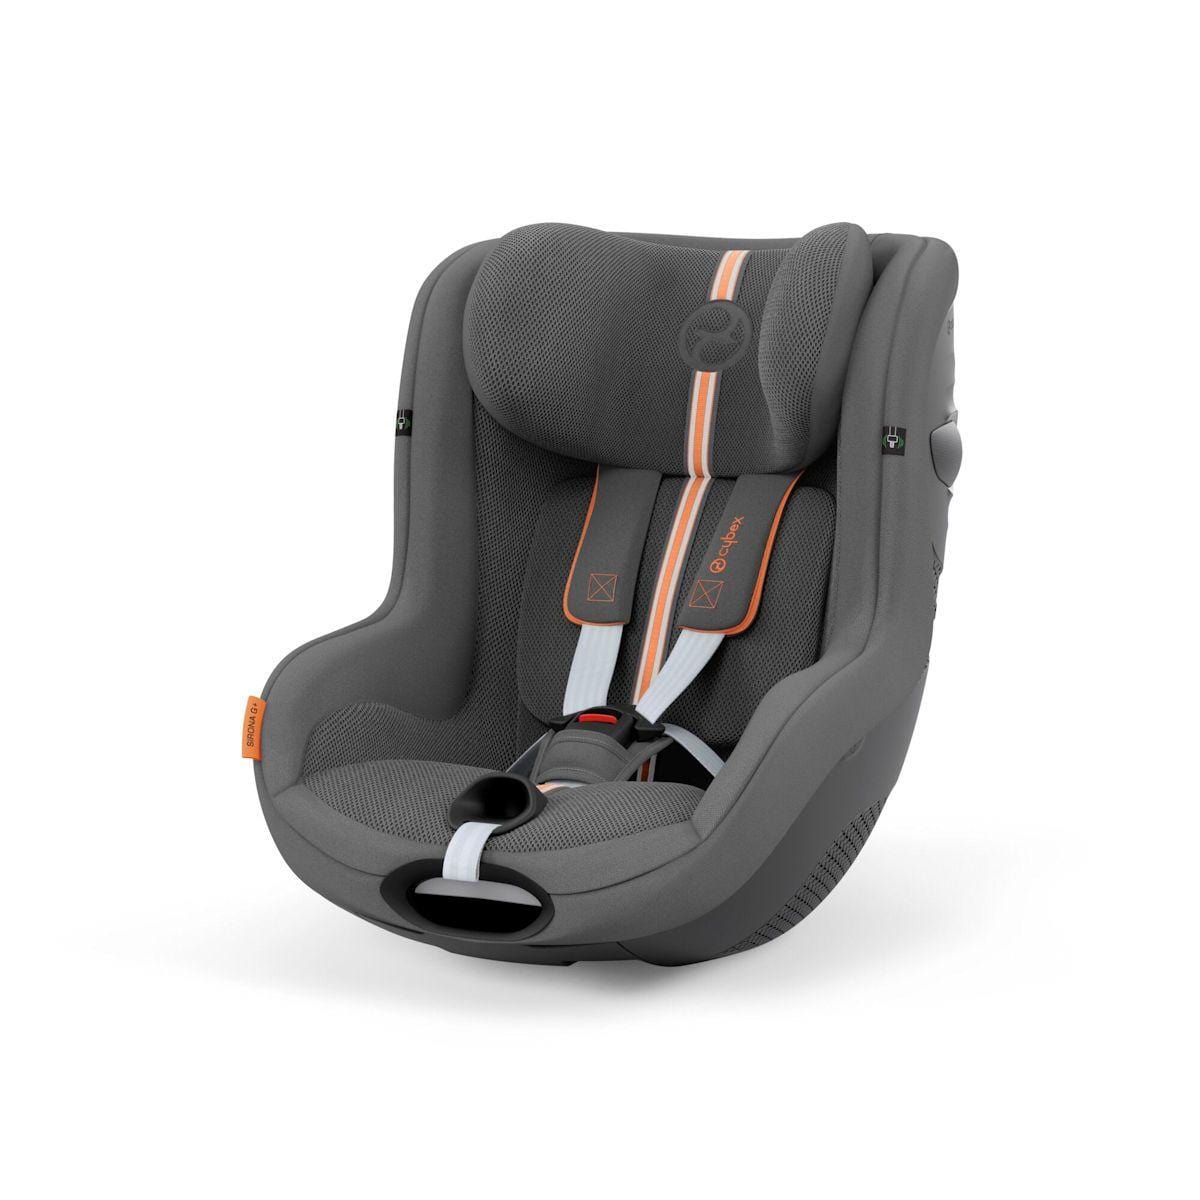 Cybex i-Size car seats Cybex Sirona G i-Size PLUS in Lava Grey